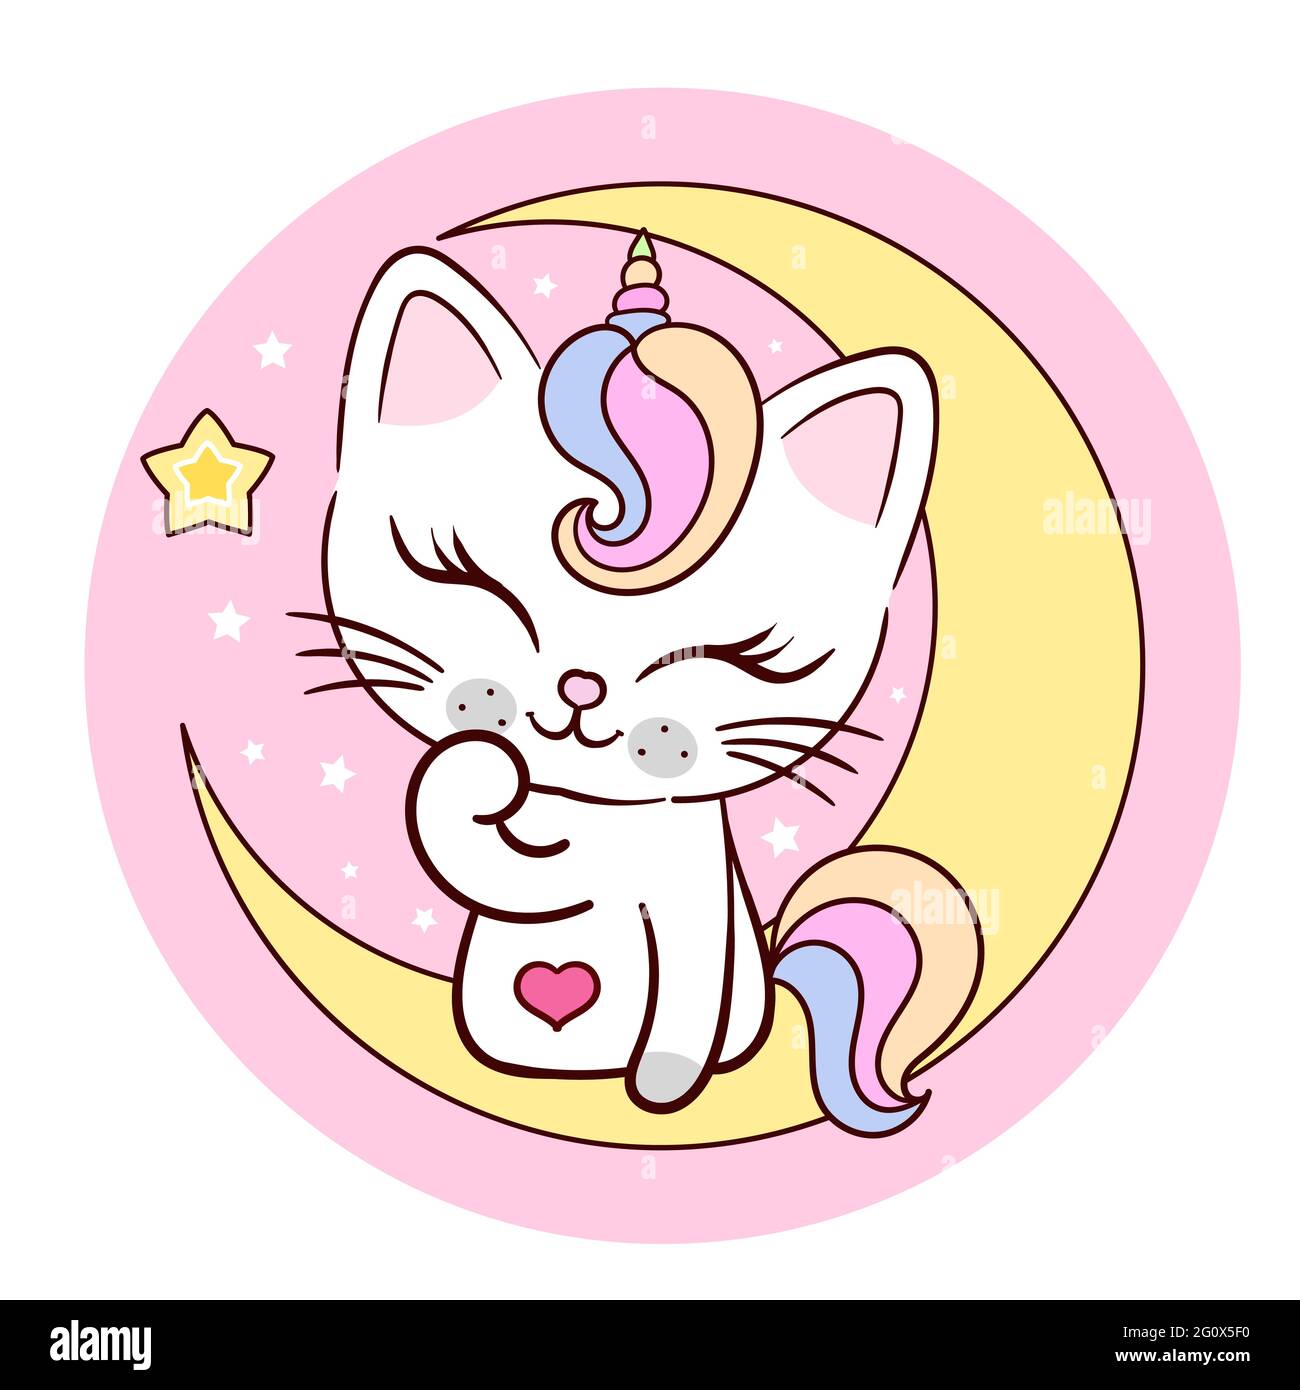 La licorne de chat est posée sur un croissant de lune. Adorable animal de fantaisie. Illustration pour enfants. Pour la conception de tirages, affiches, autocollants, cartes postales, cartes, Illustration de Vecteur